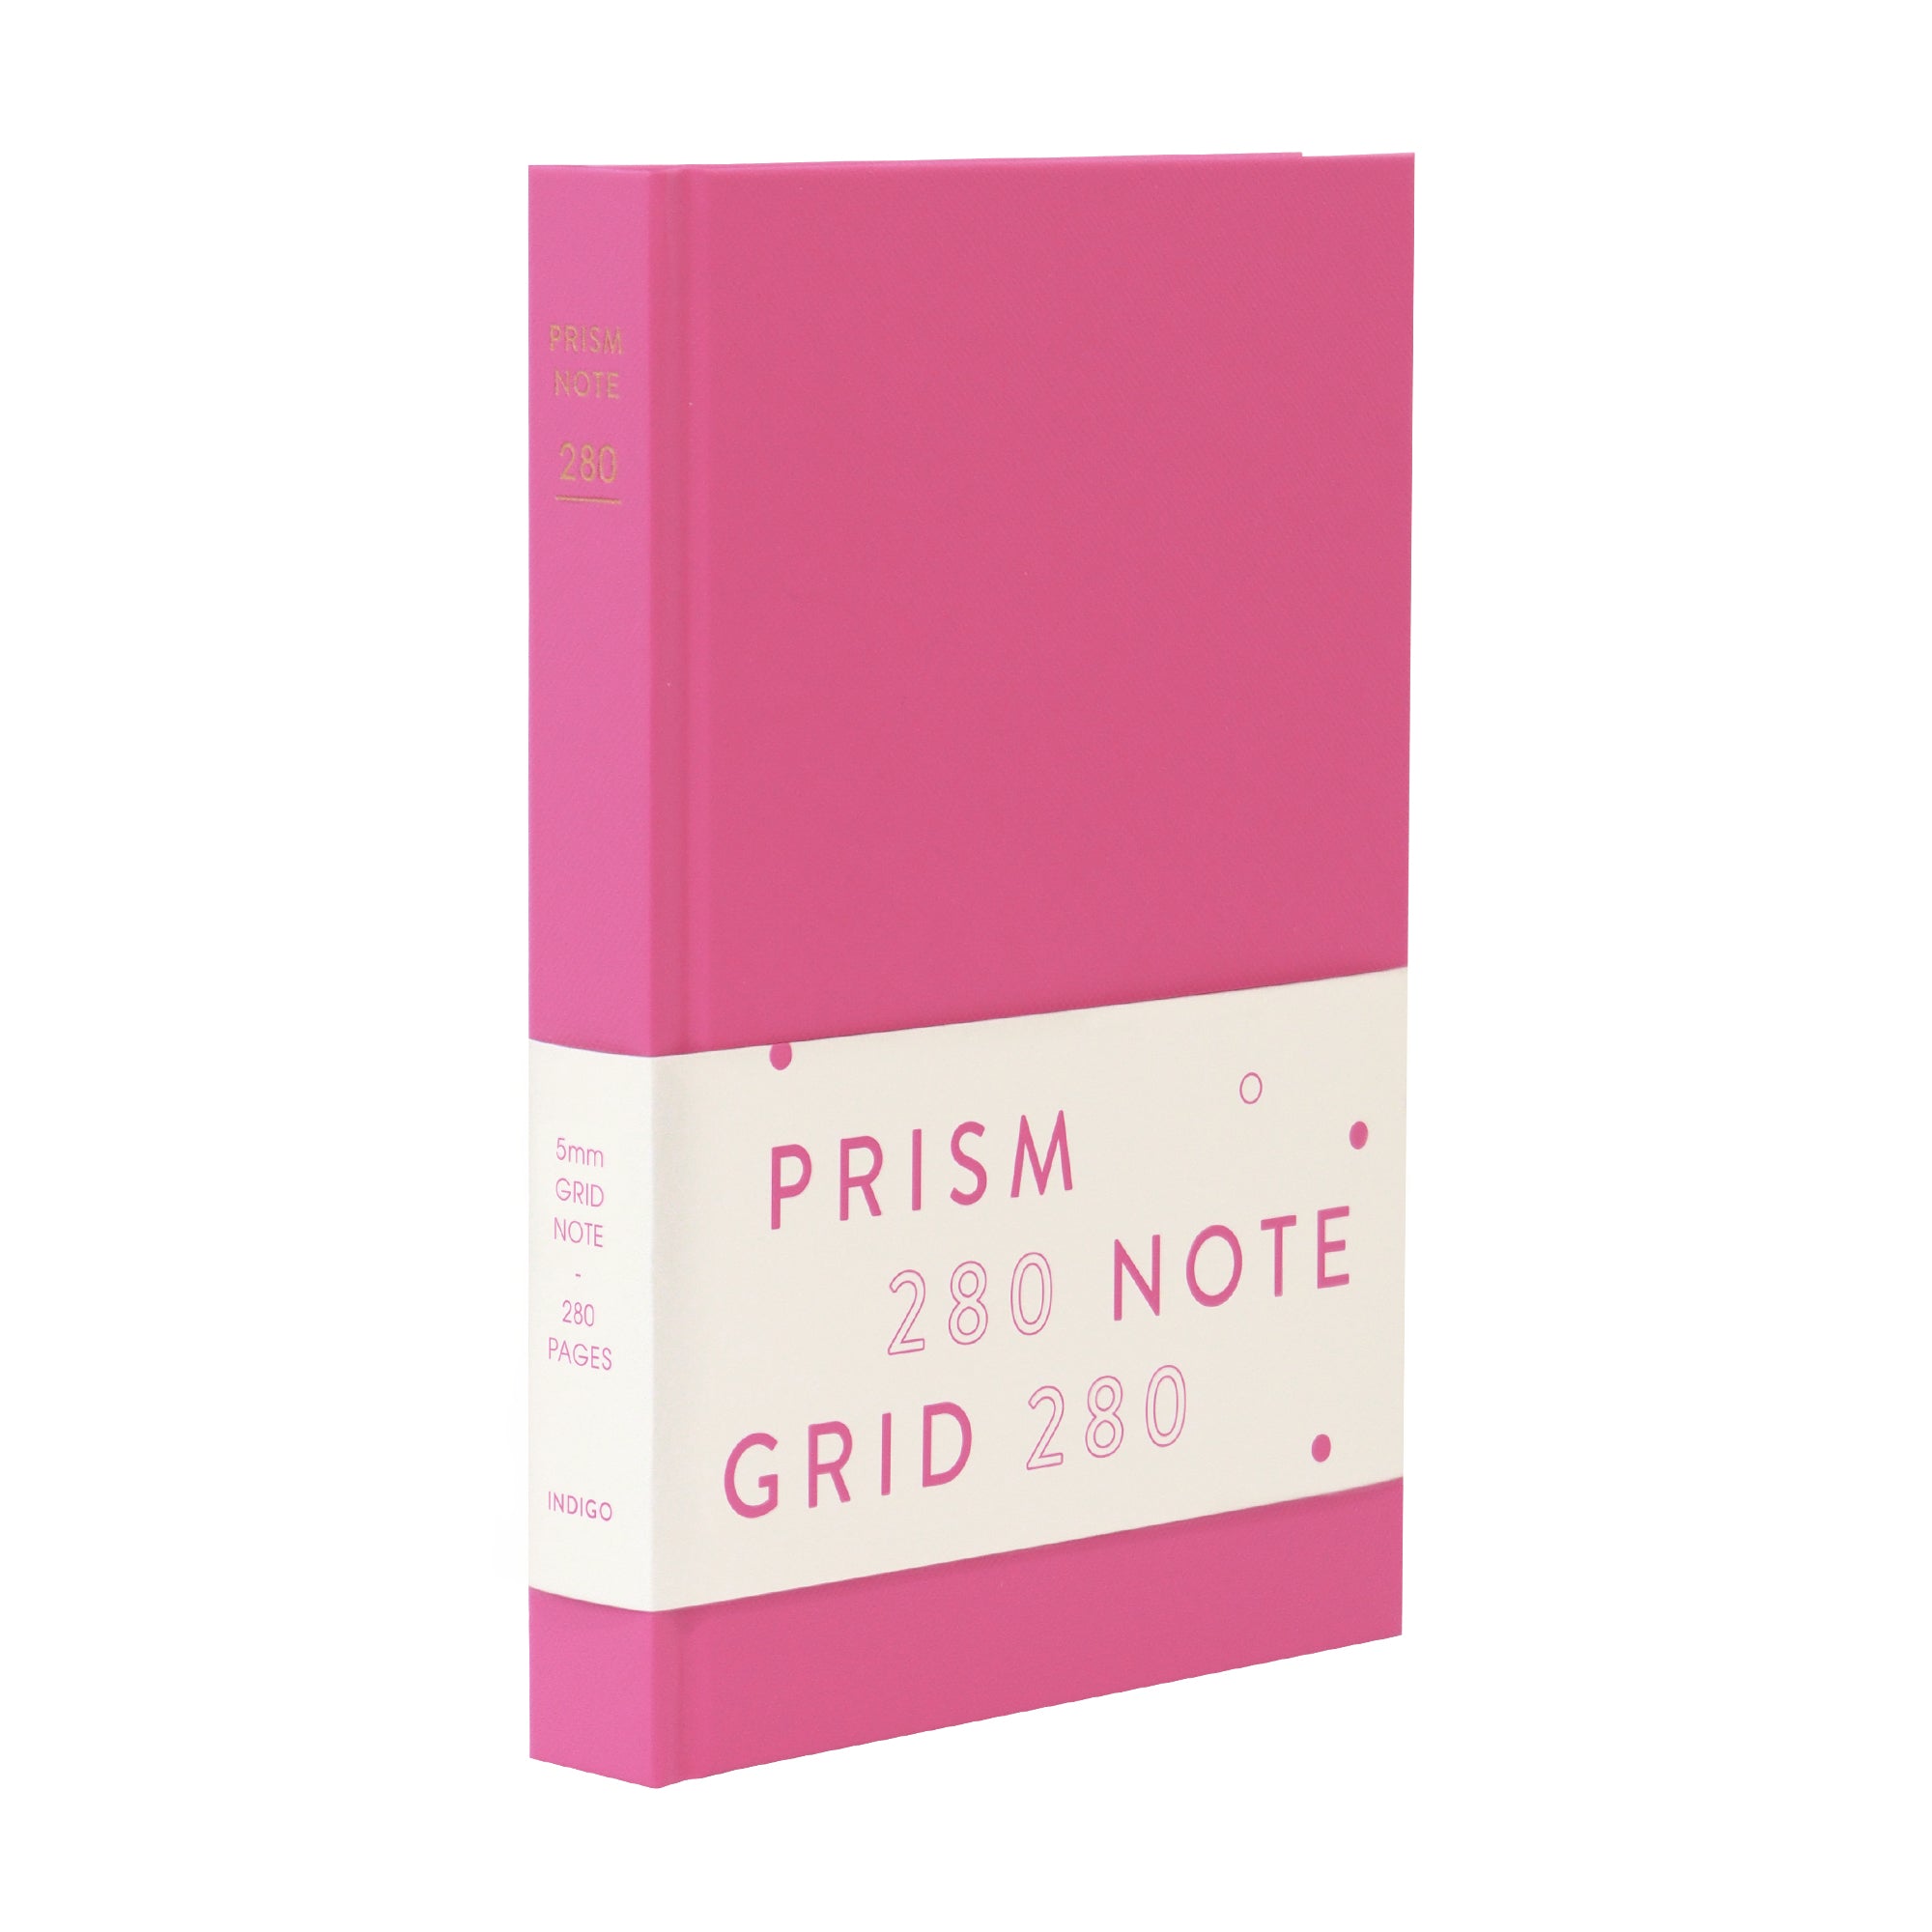 INDIGO Prism 280 Grid hardcover note (24edition)